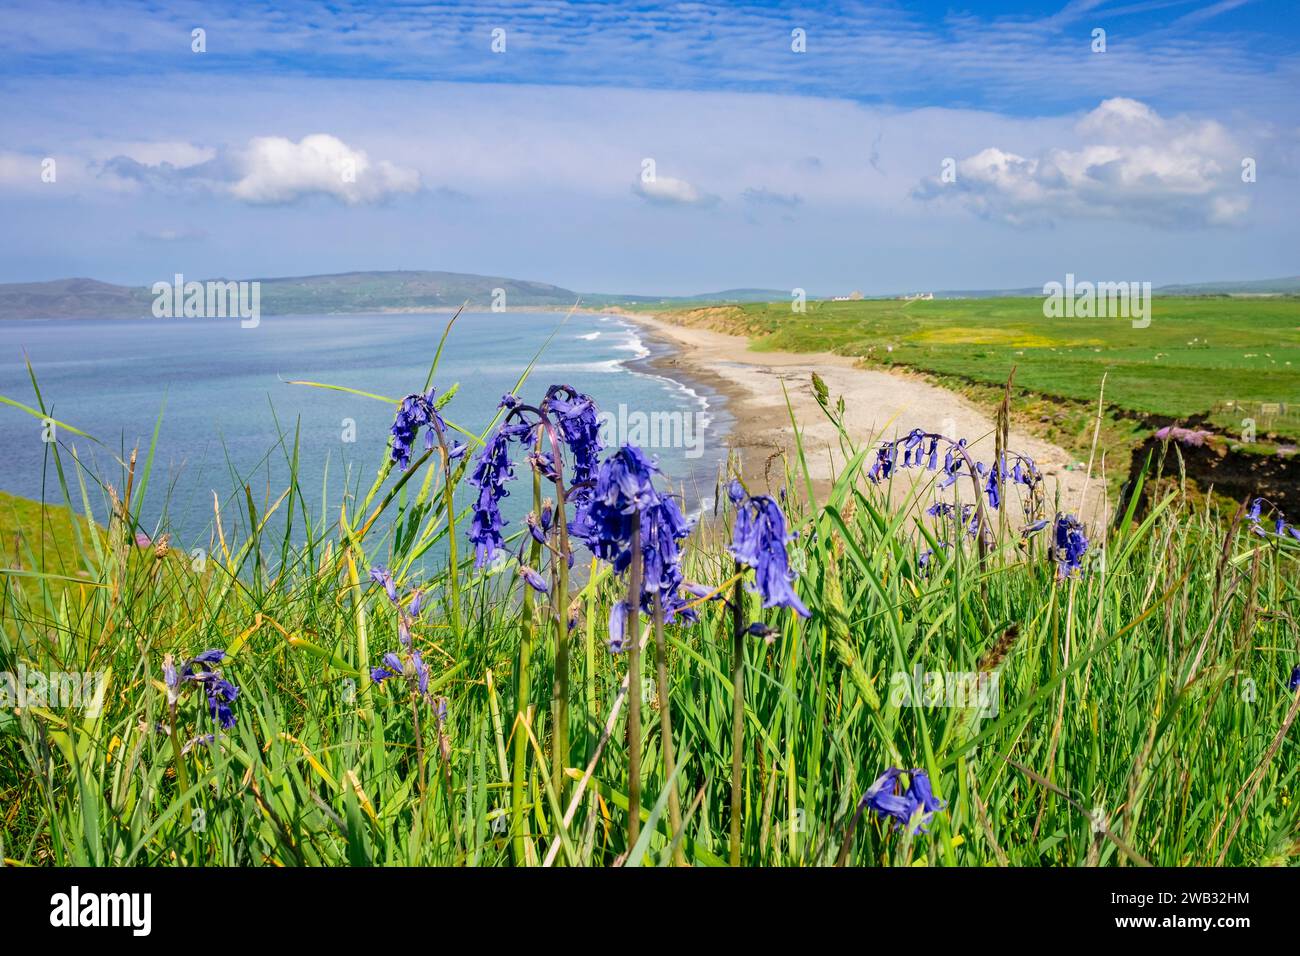 Bluebells à Porth Neigwl ou Hell's Mouth Beach sur la péninsule de Llyn près d'Abersoch, Gwynedd, pays de Galles, Royaume-Uni, Grande-Bretagne. Photographié depuis Wales Coast Path Banque D'Images